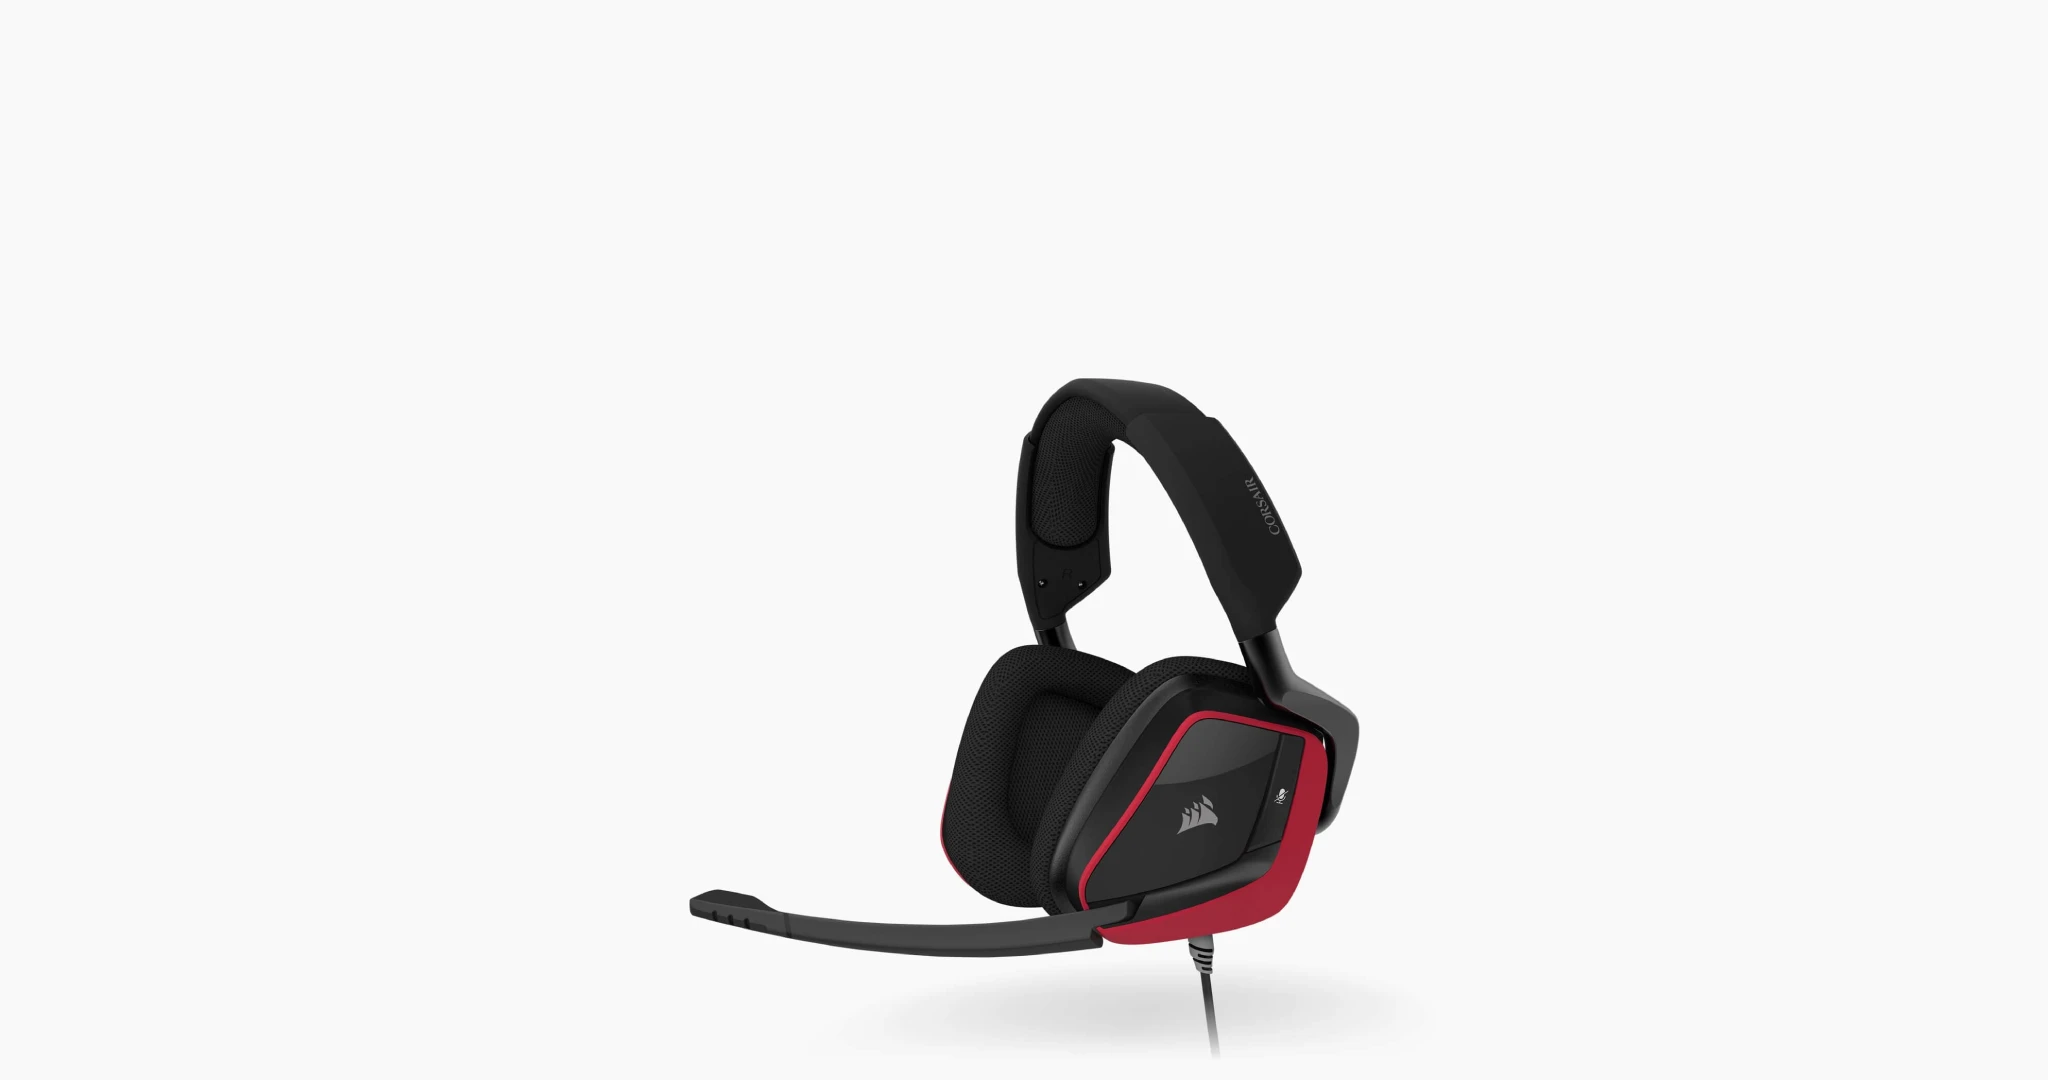 VOID ELITE SURROUND Premium Gaming Headset with 7.1 Surround Sound — Cherry